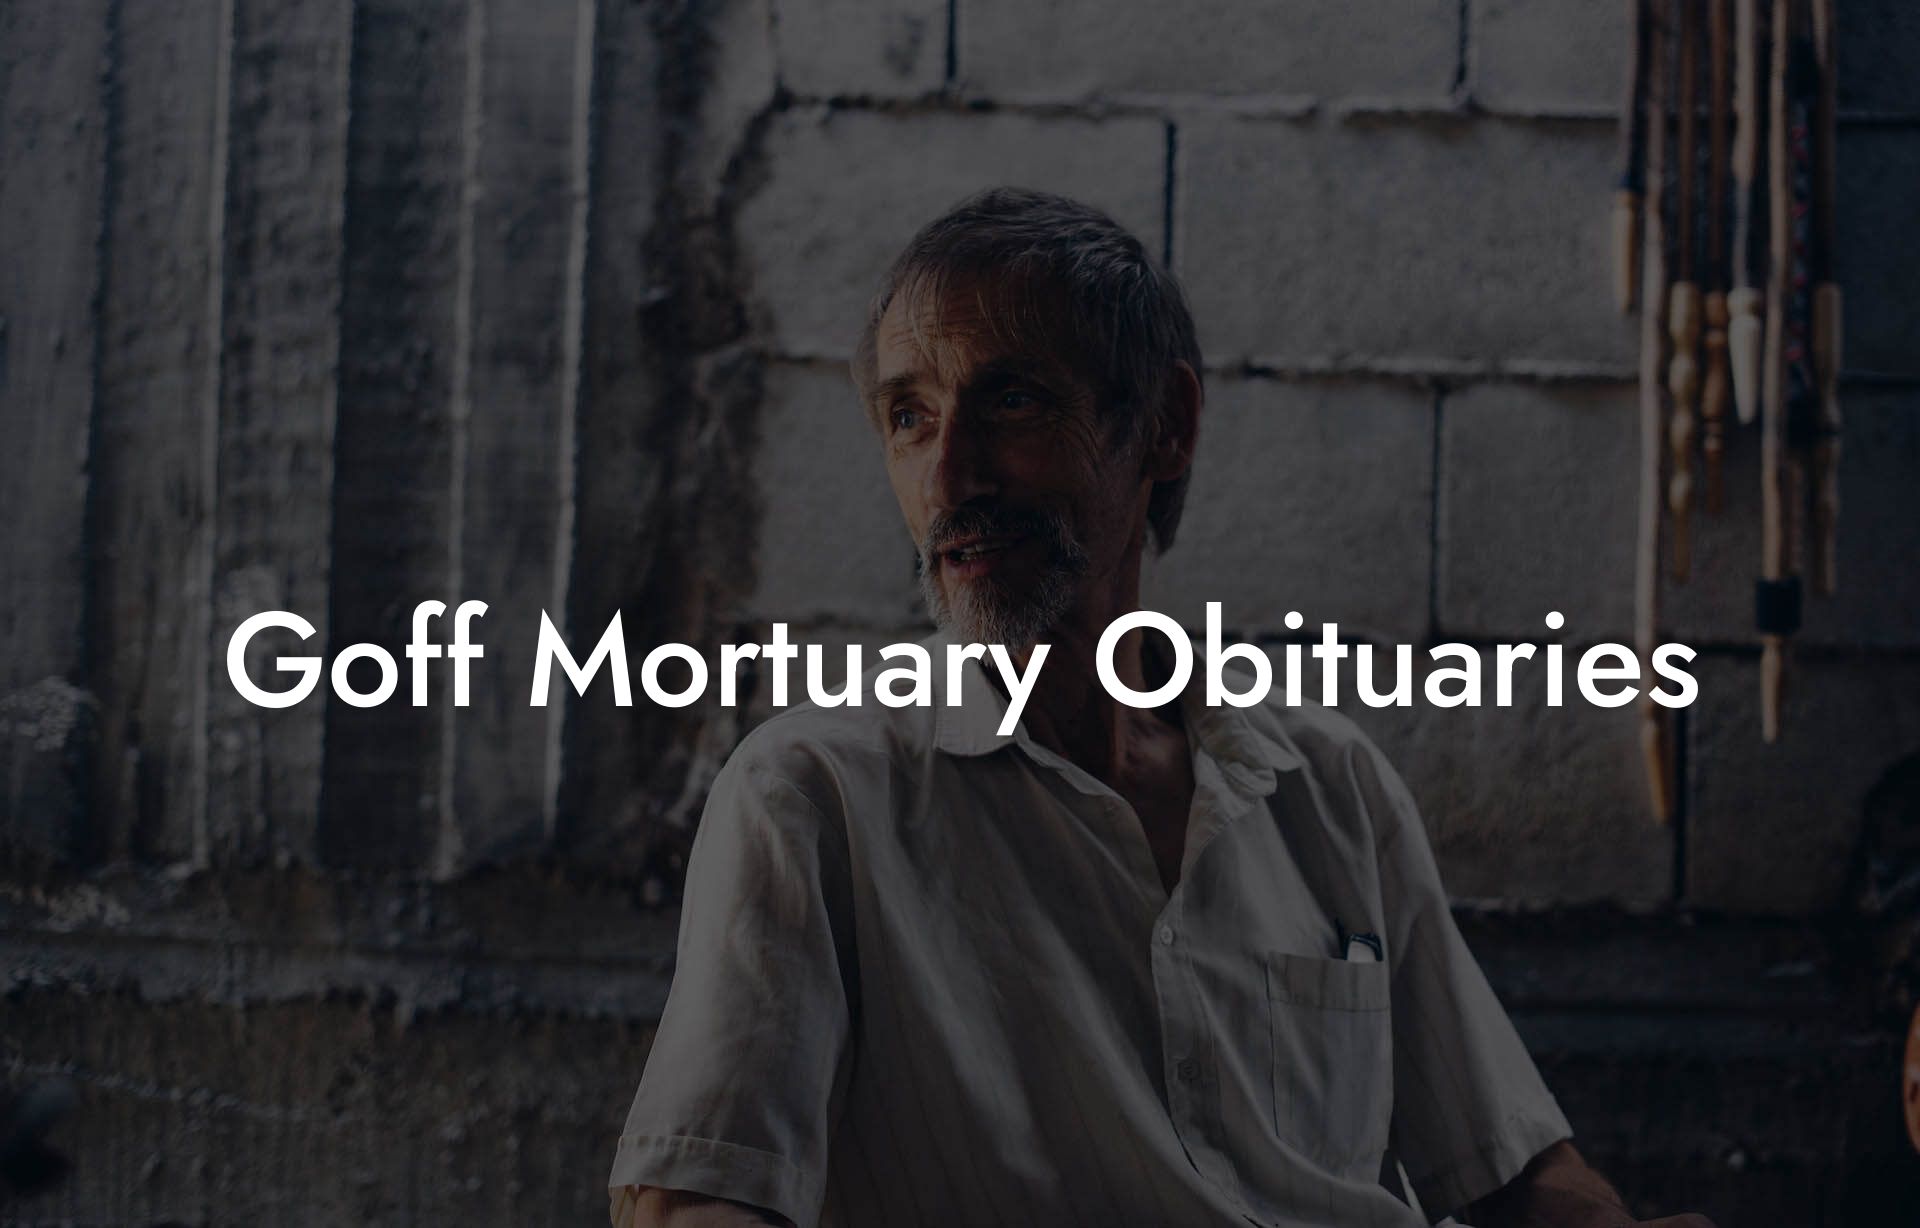 Goff Mortuary Obituaries